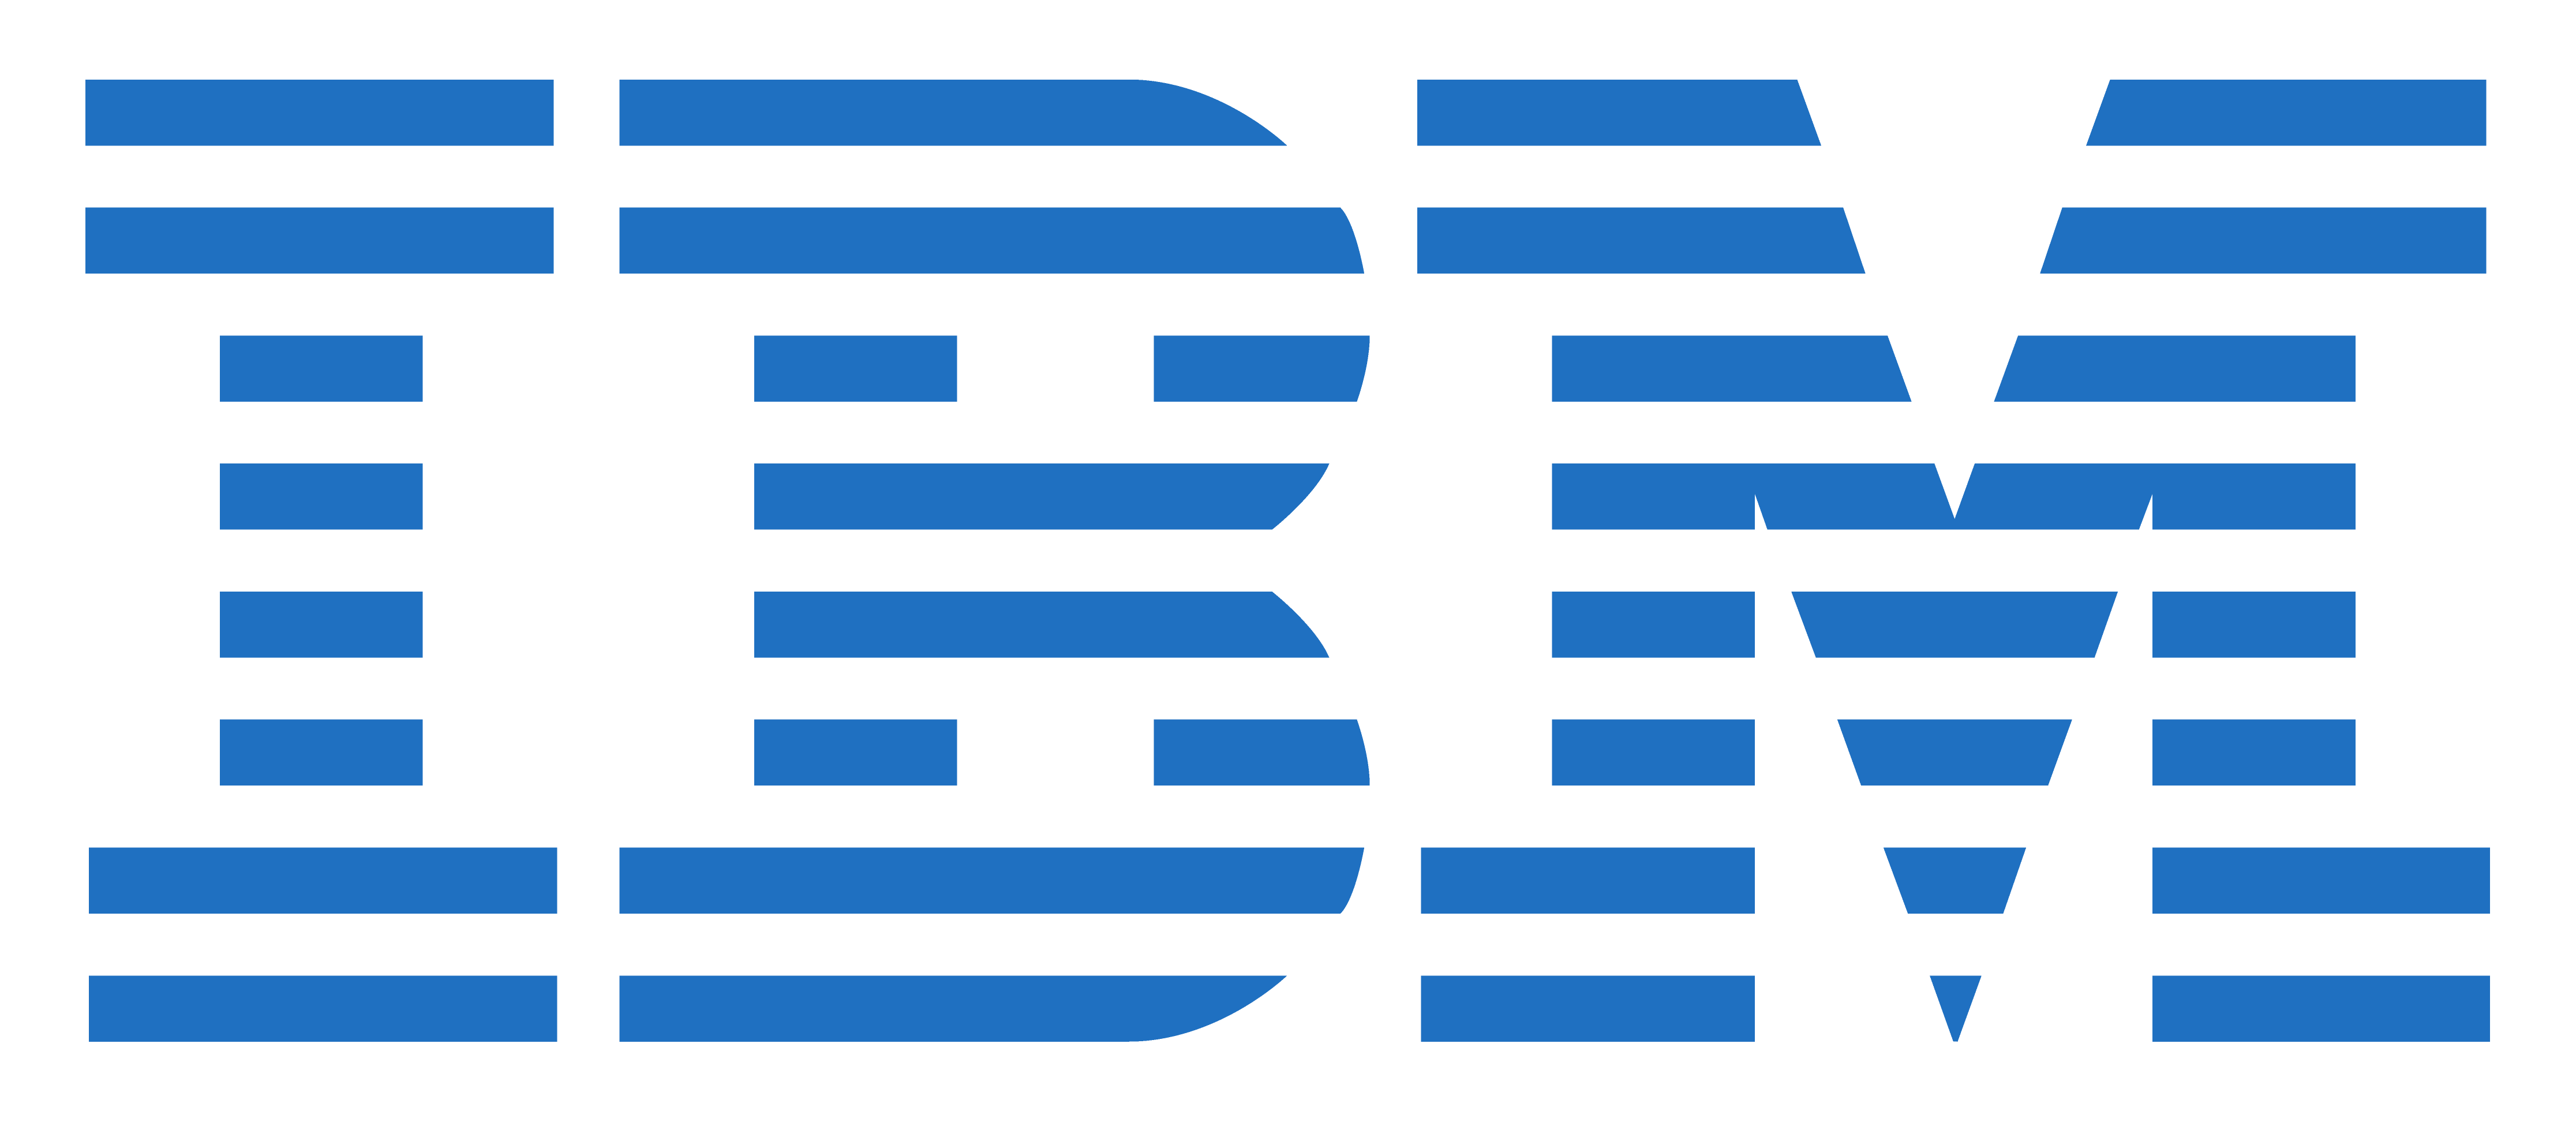 IBM Software Business Analyti